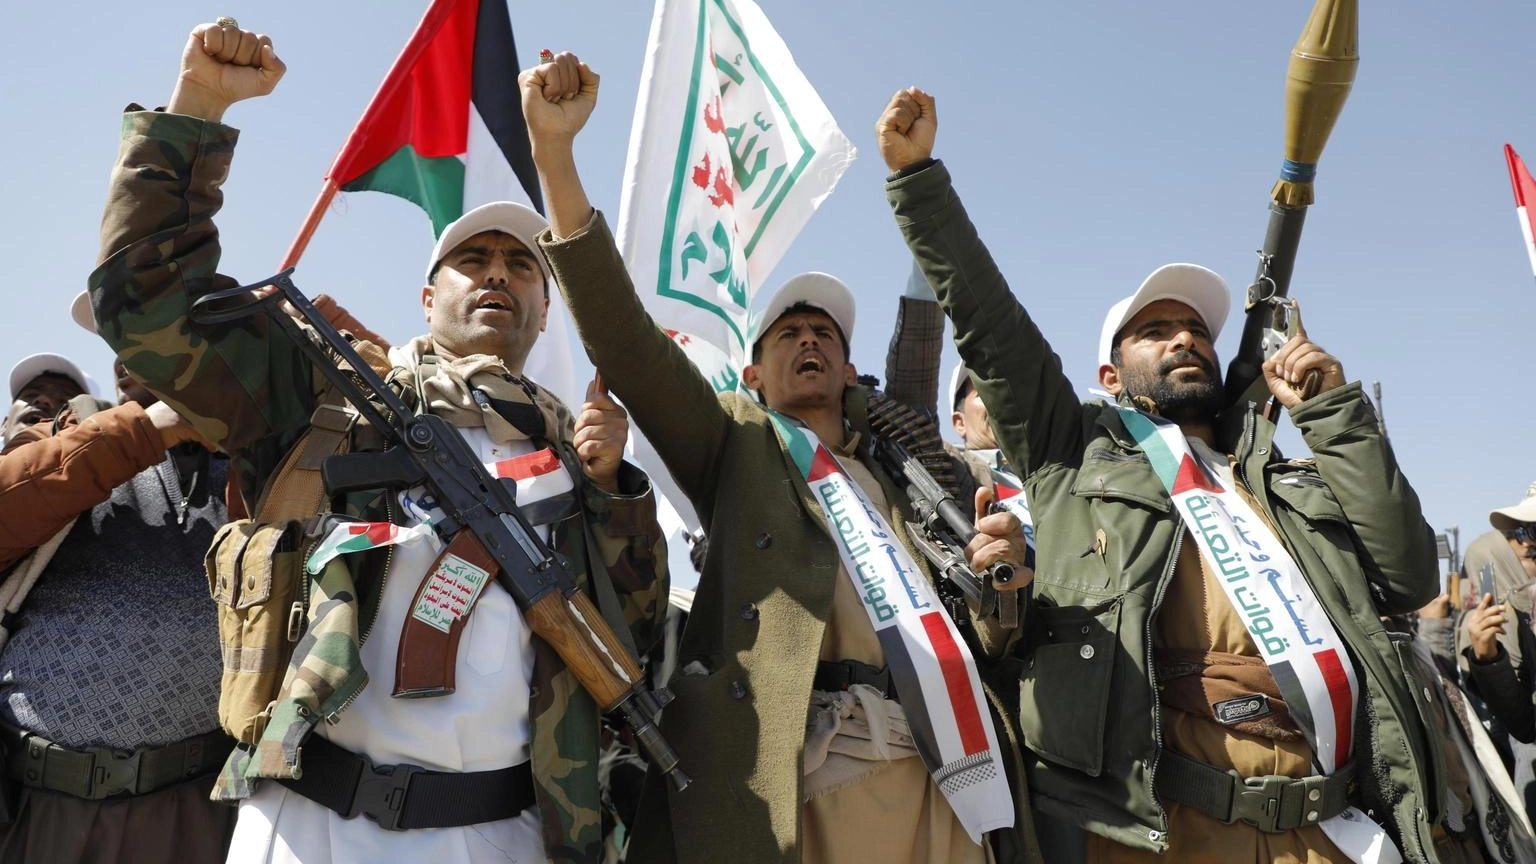 L'Ue punta a inviare 3 navi nel Mar Rosso contro Houthi